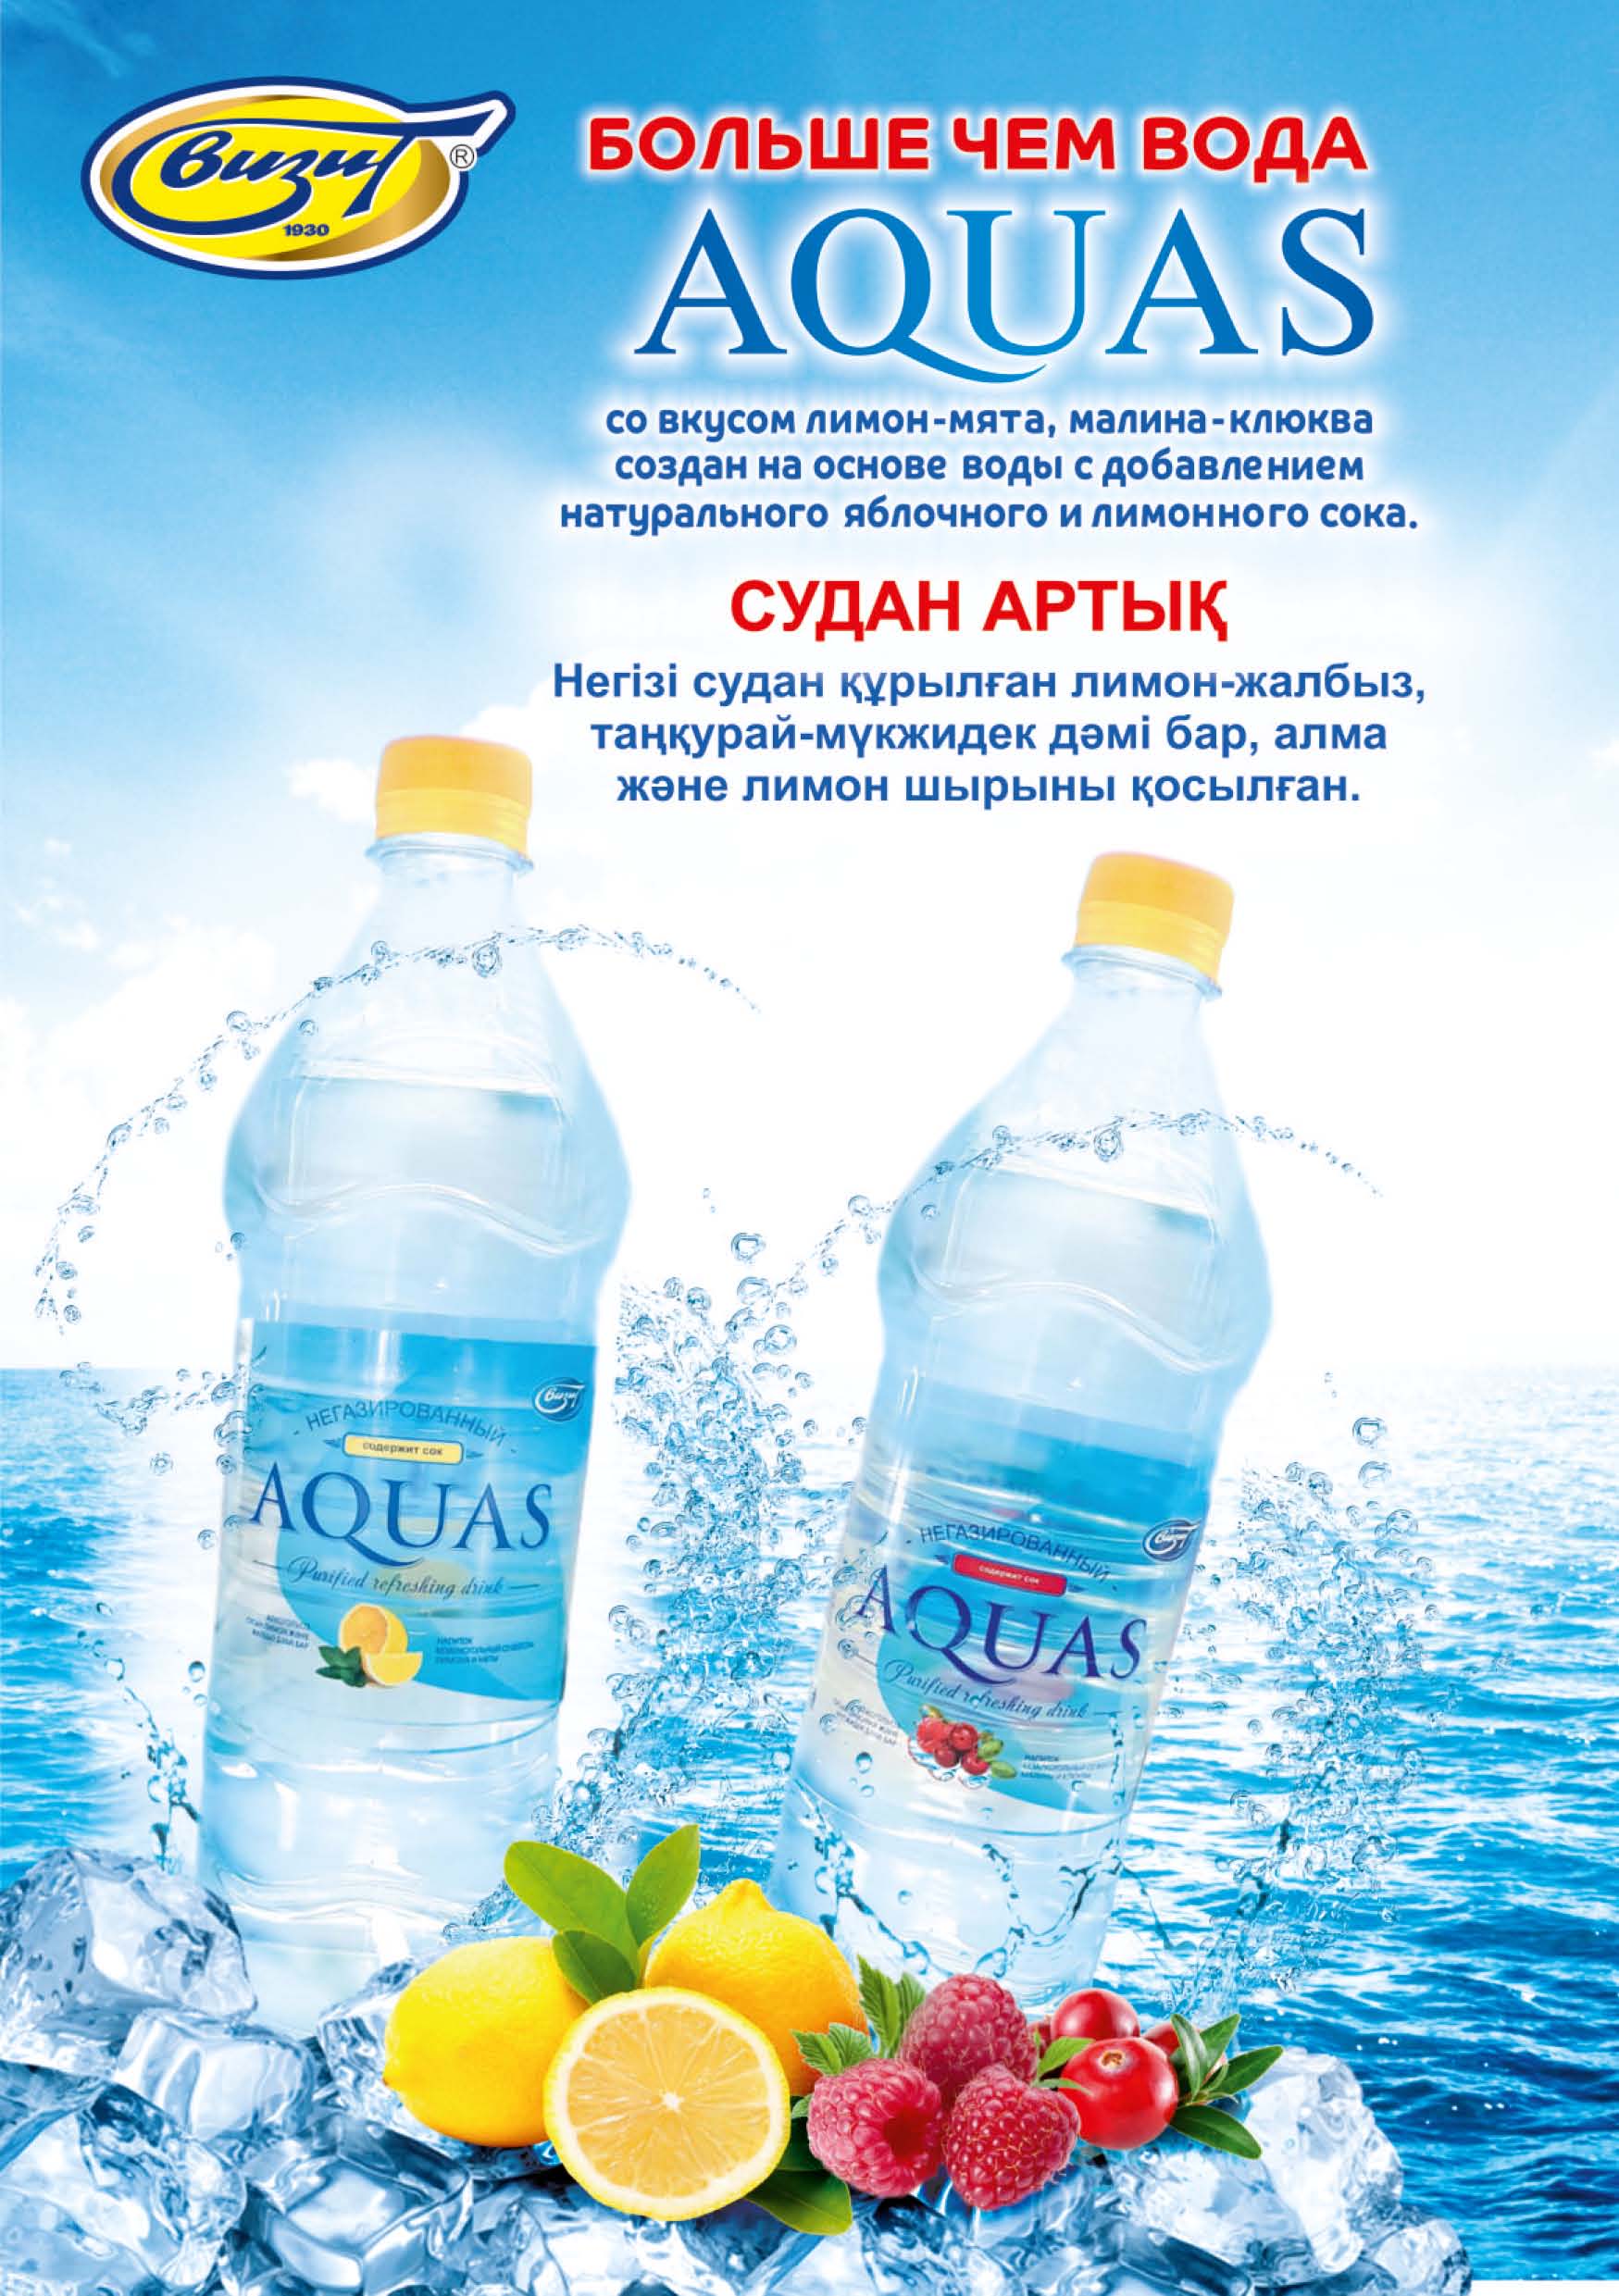 AQUAS Визит - завод безалкогольных напитков